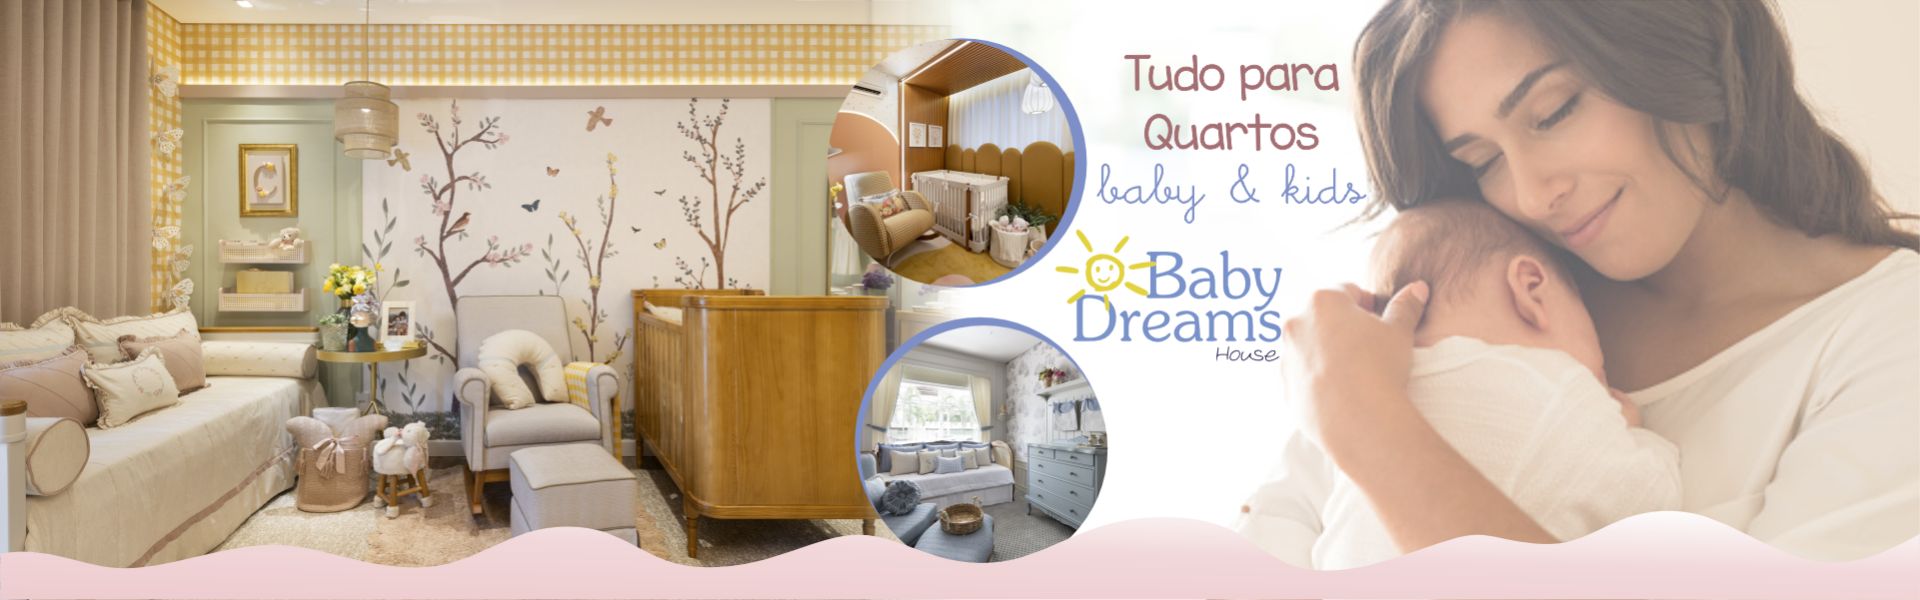 Tudo para quartos, baby & kids | Baby Dreams House